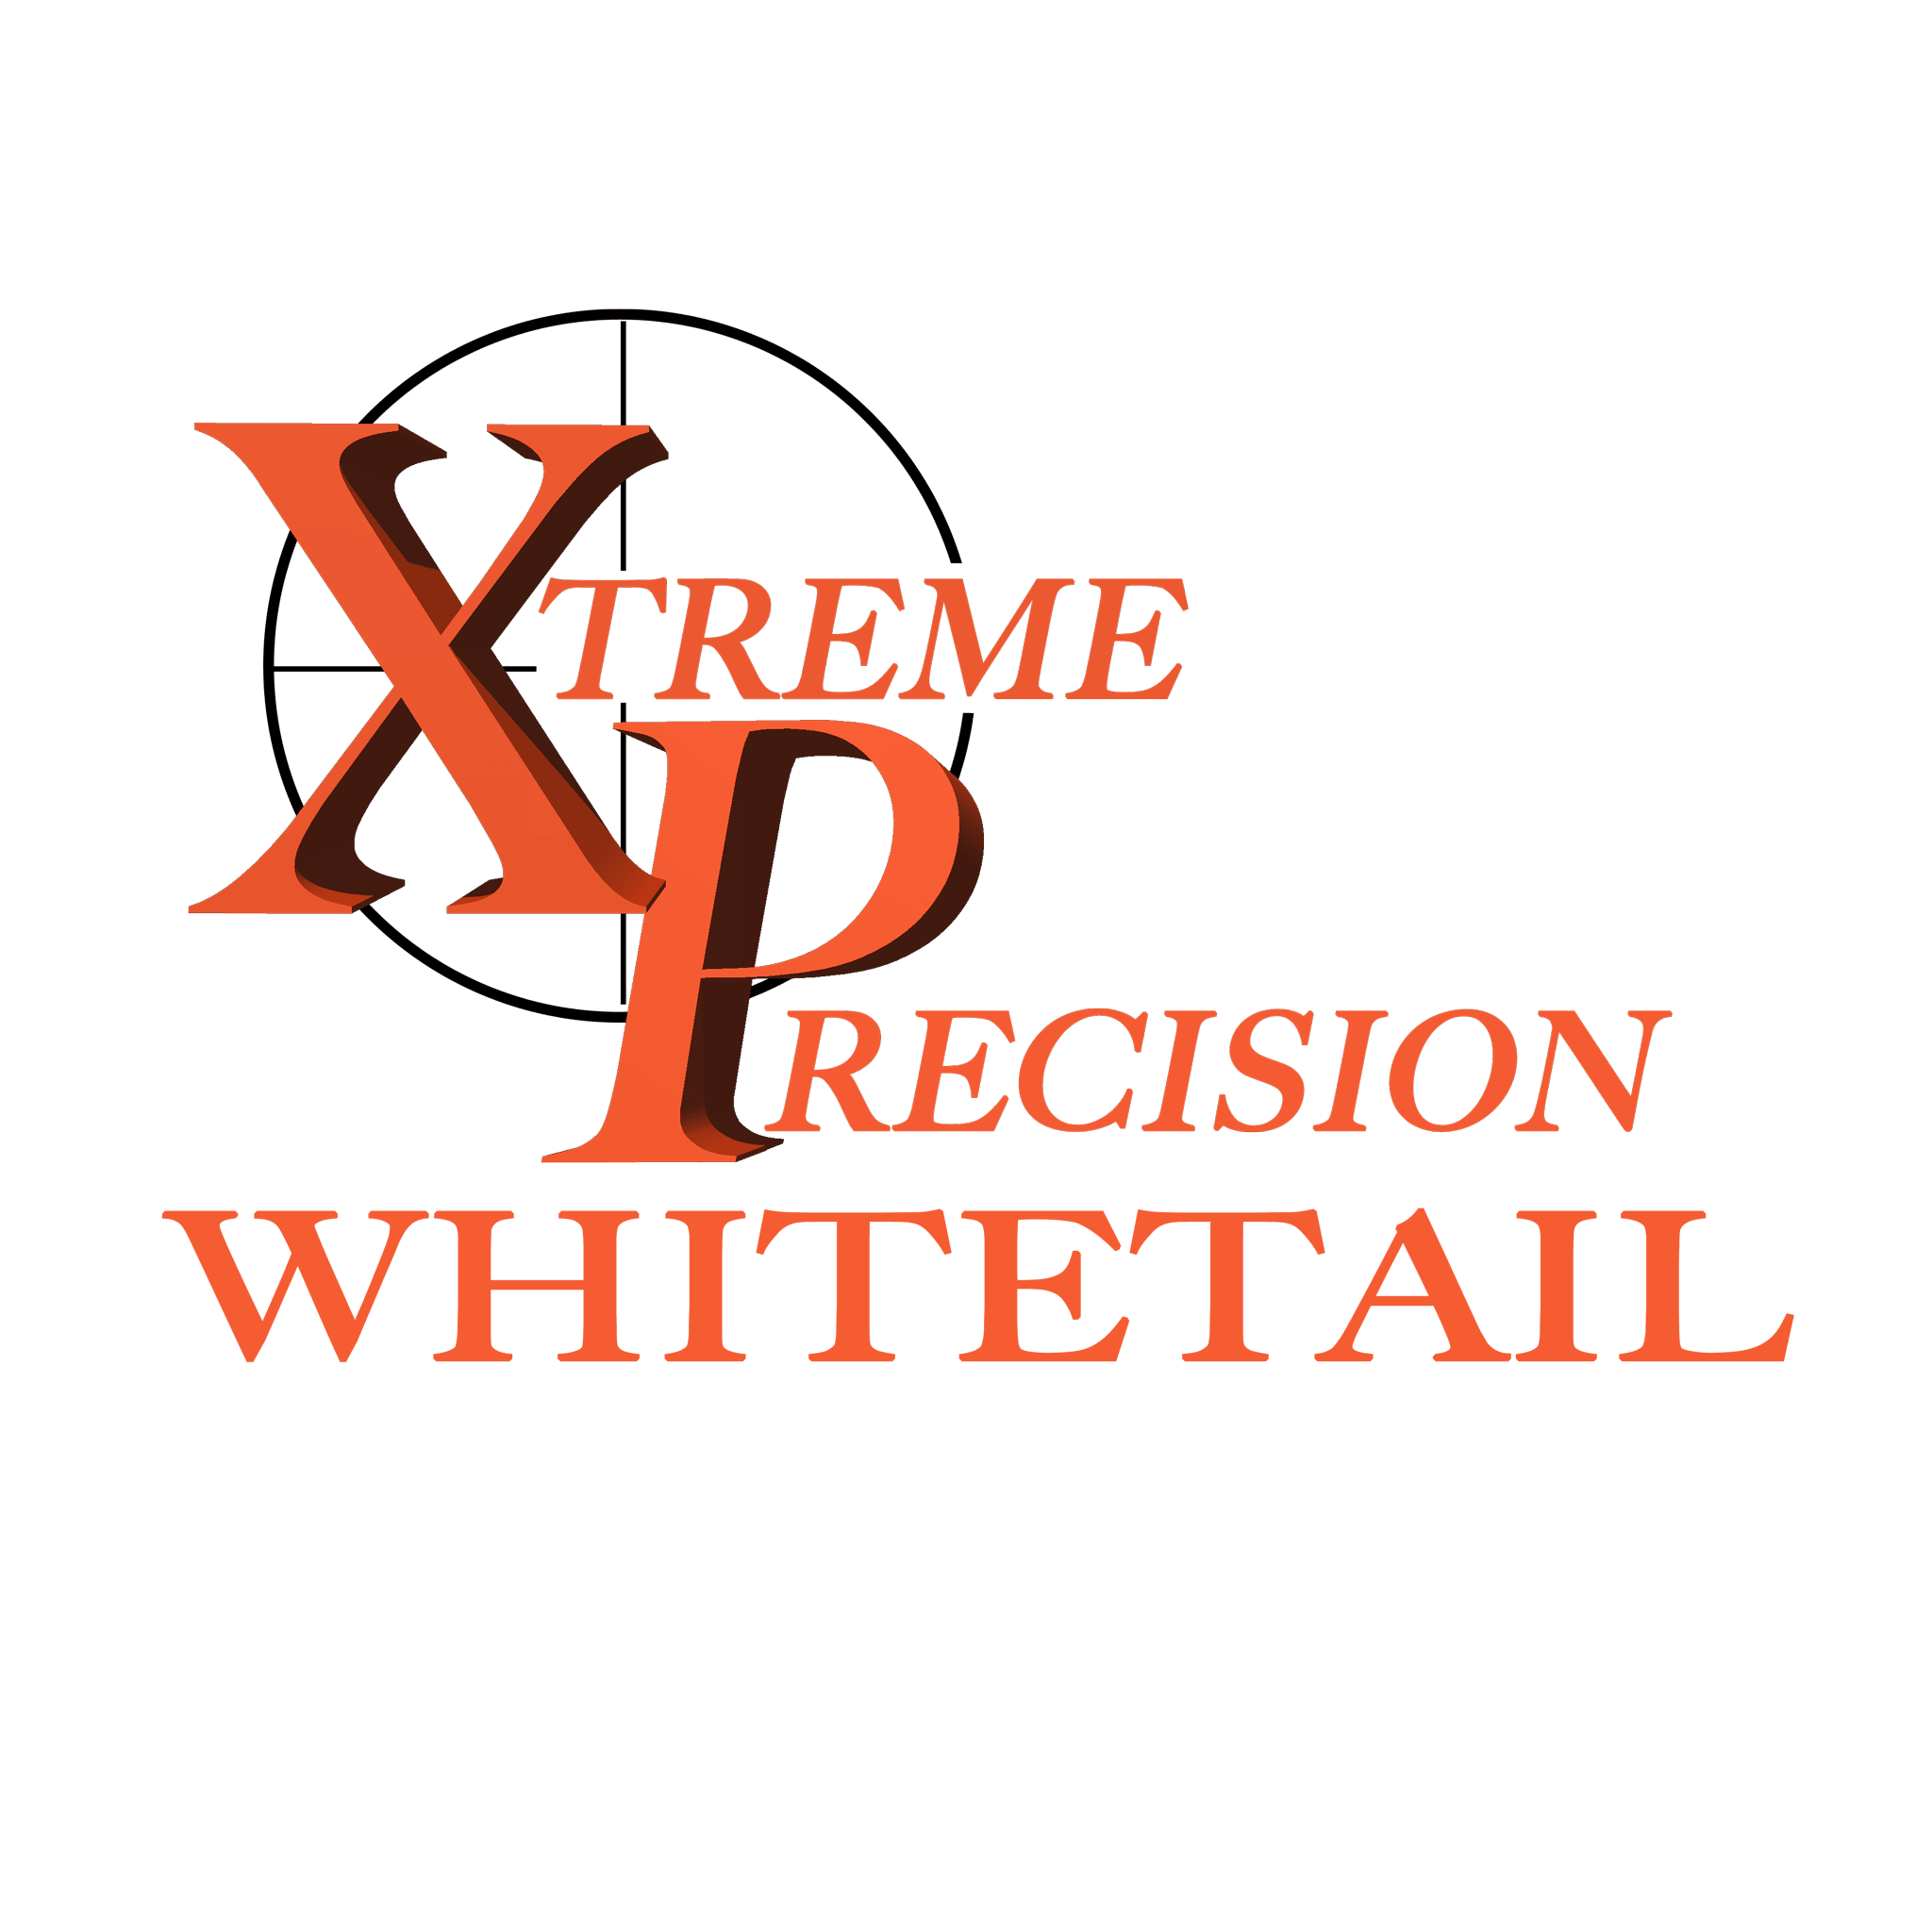 Xtreme Precision - Matuska Taxidermy Supply Company